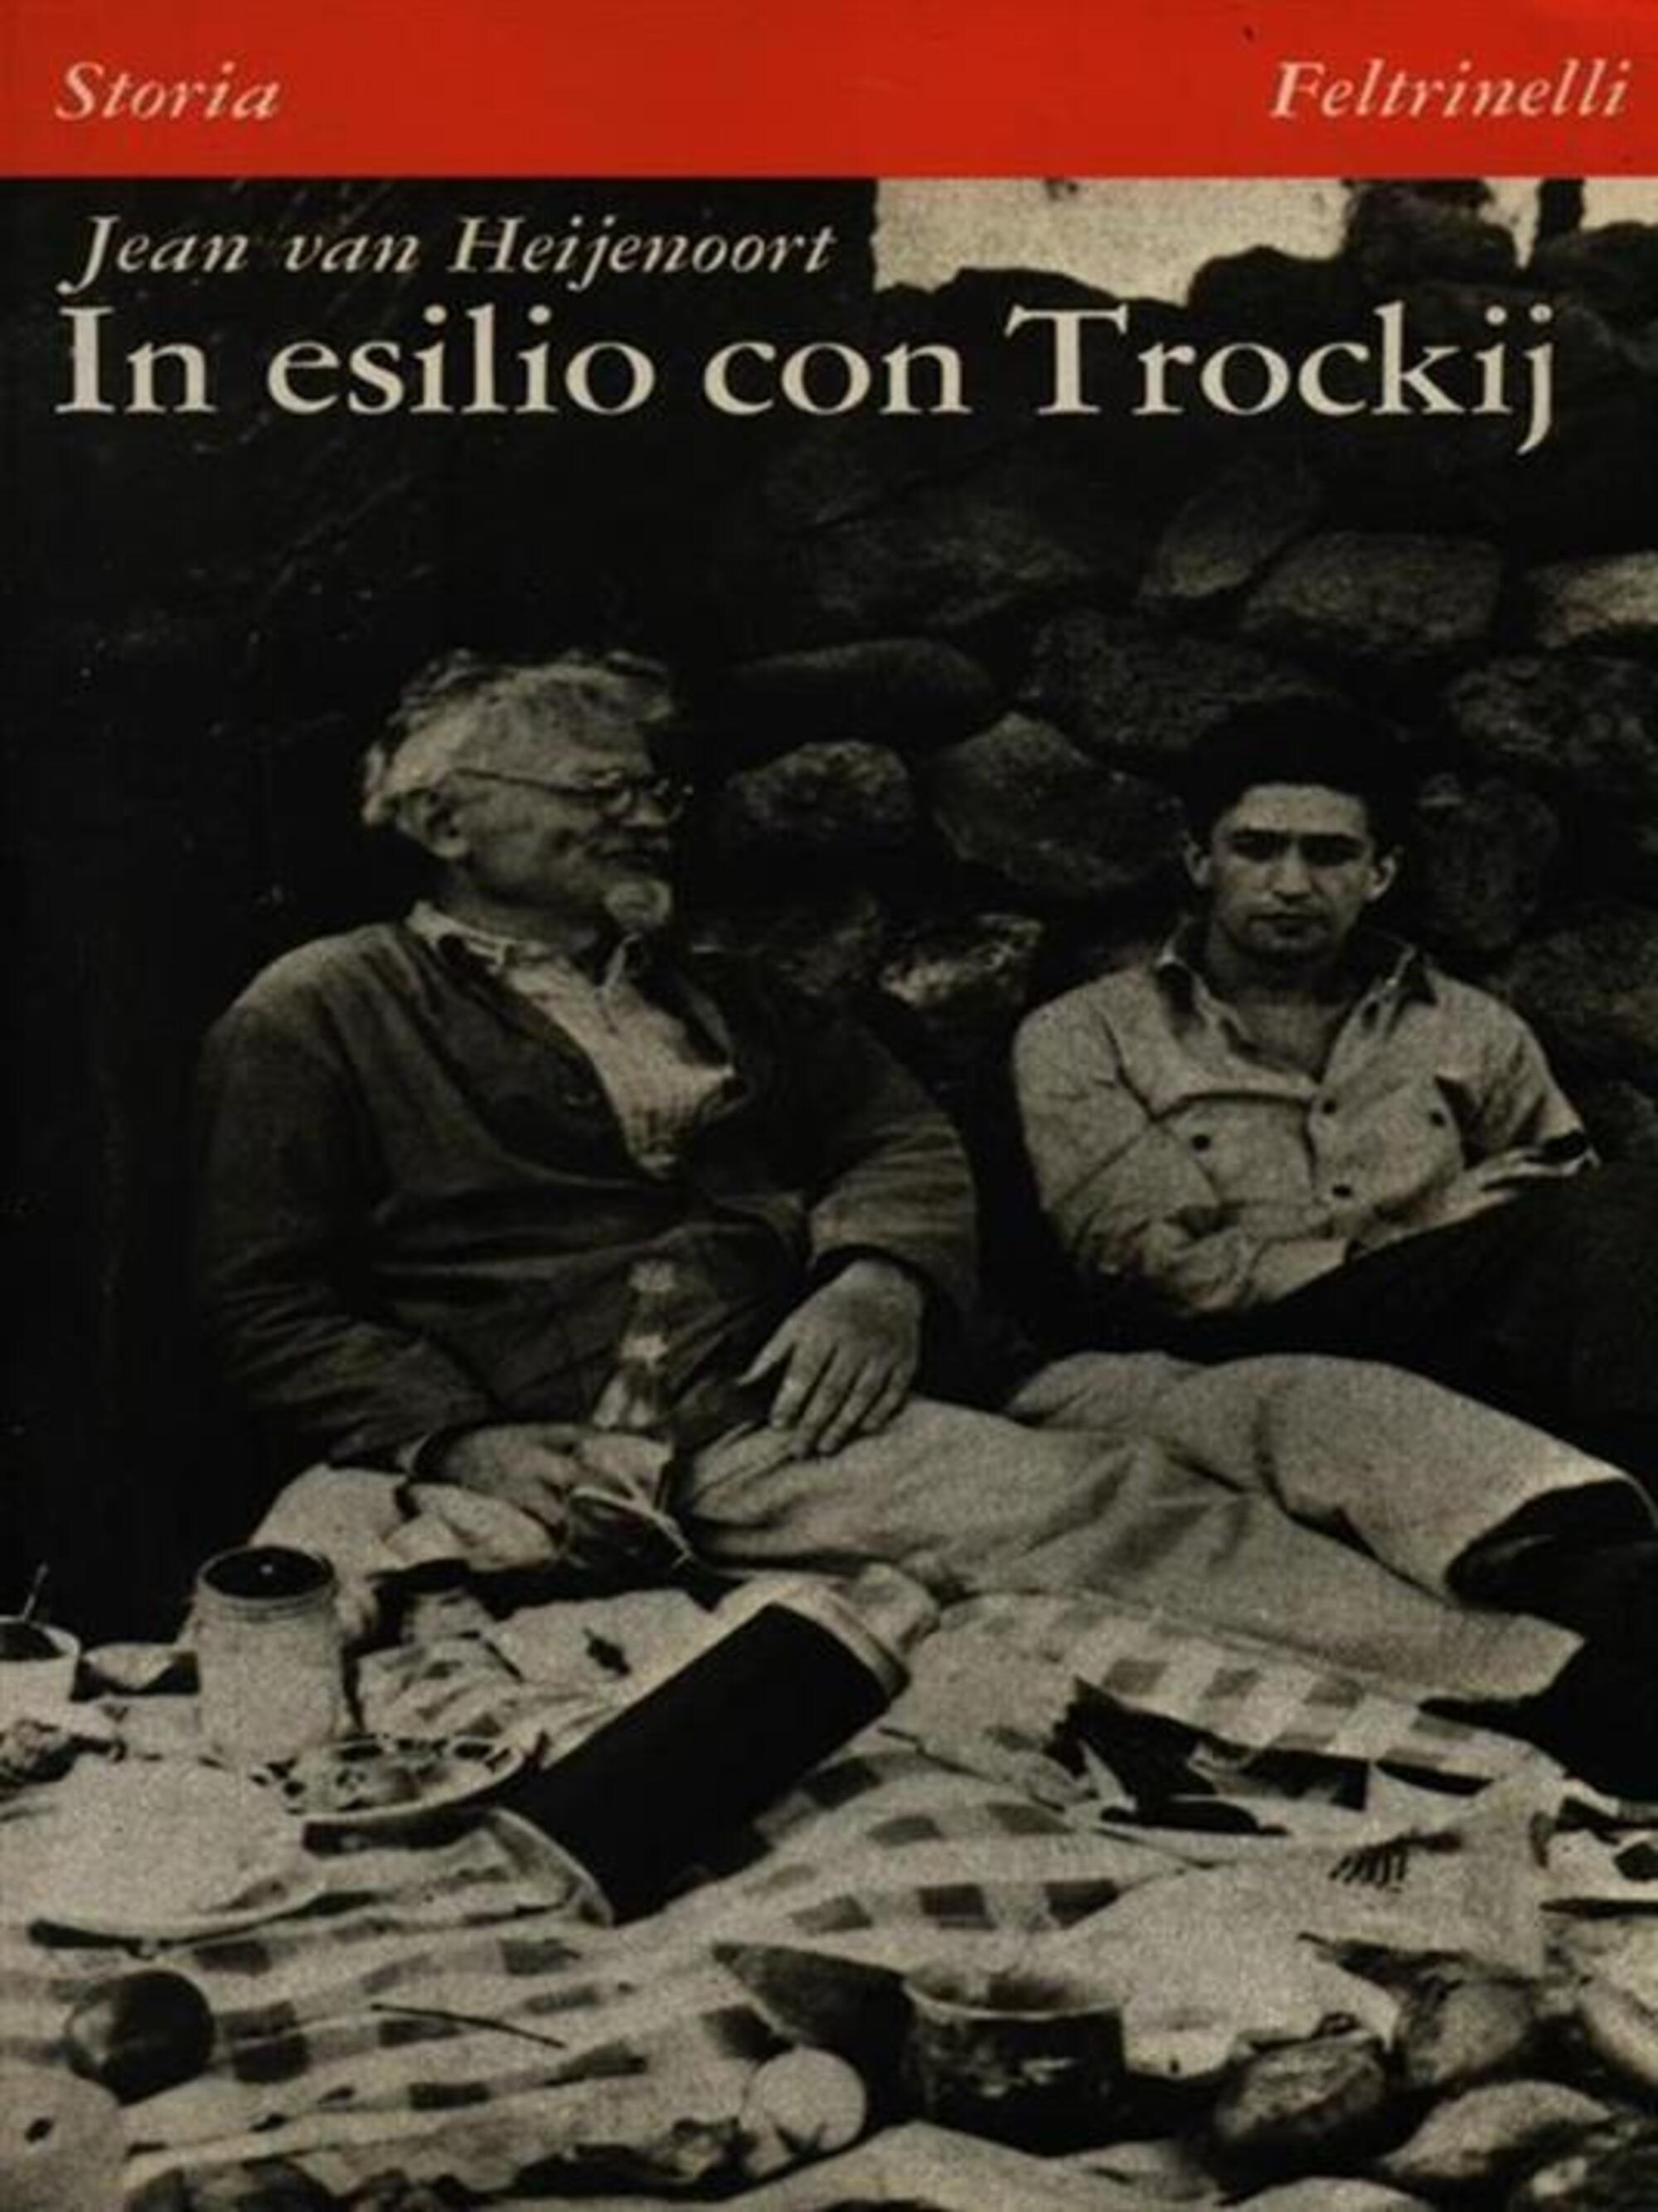 In esilio con Trockij, Feltrinelli, 1980